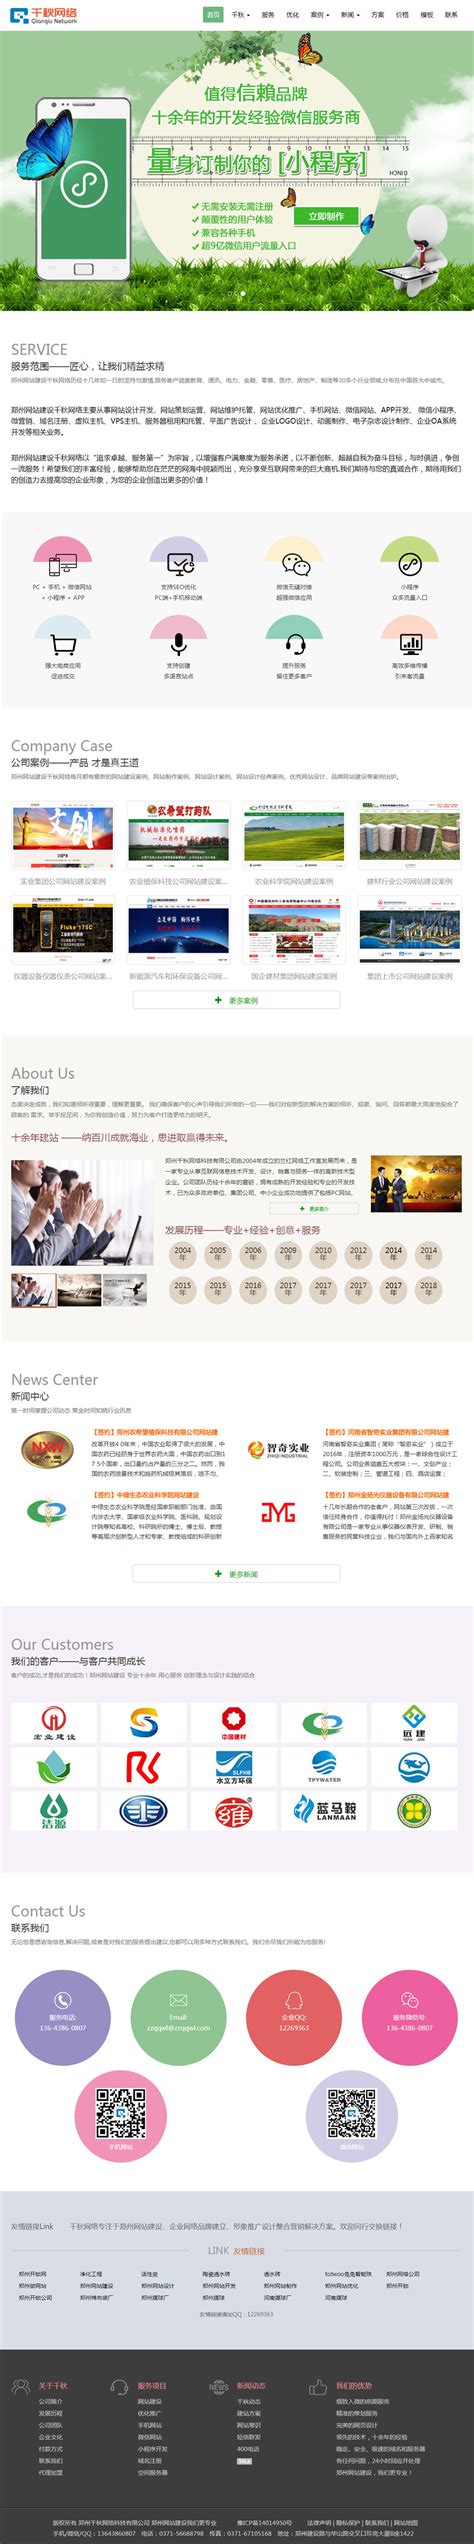 郑州做网站的公司联系电话和地址查询